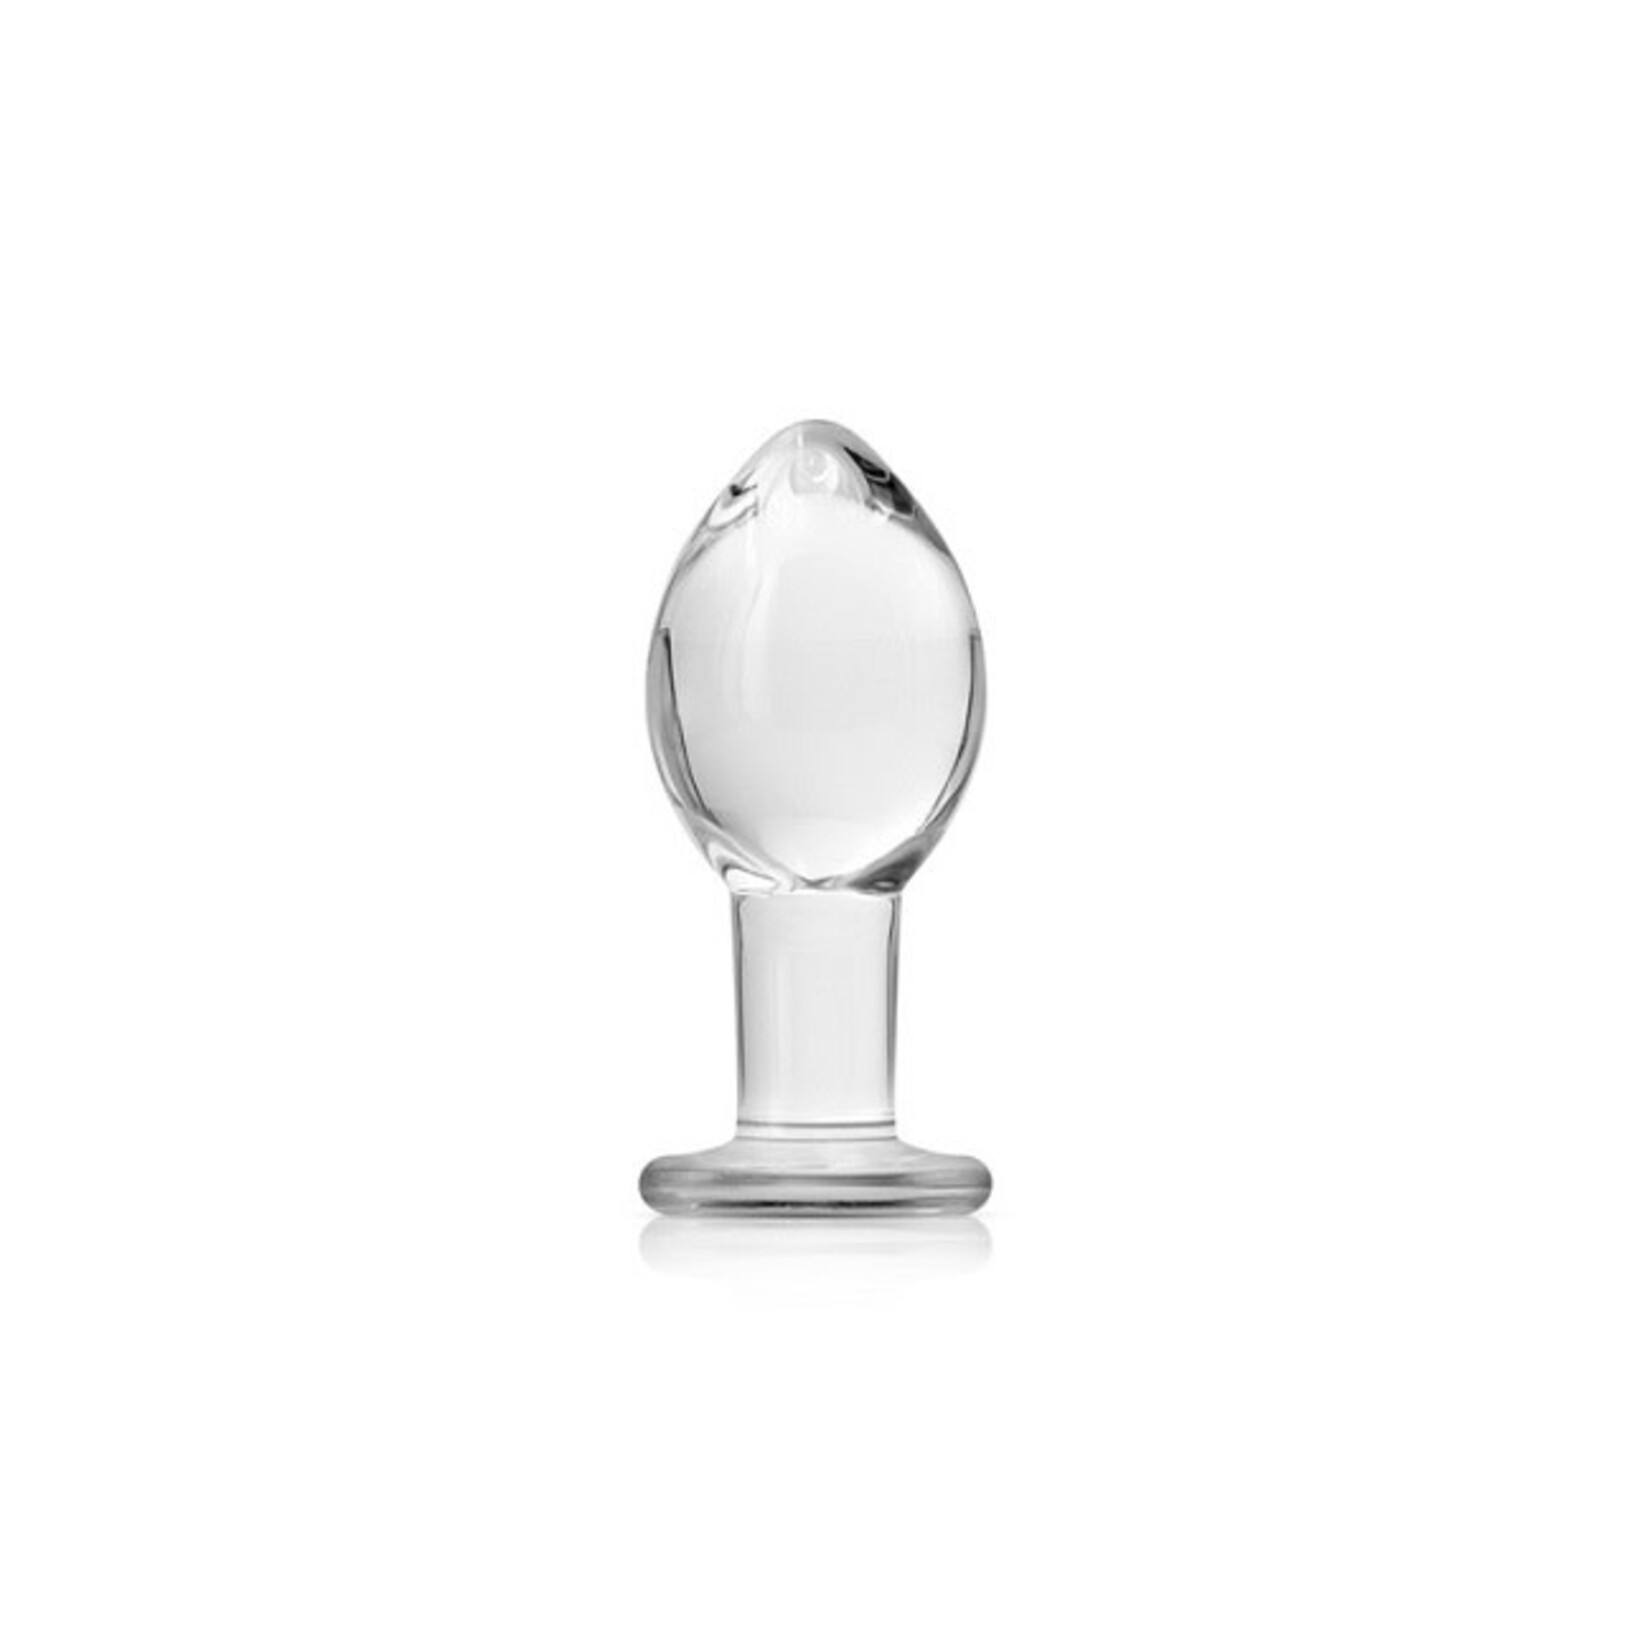 NS Novelties Crystal Premium Glass Tapered Plug - Large